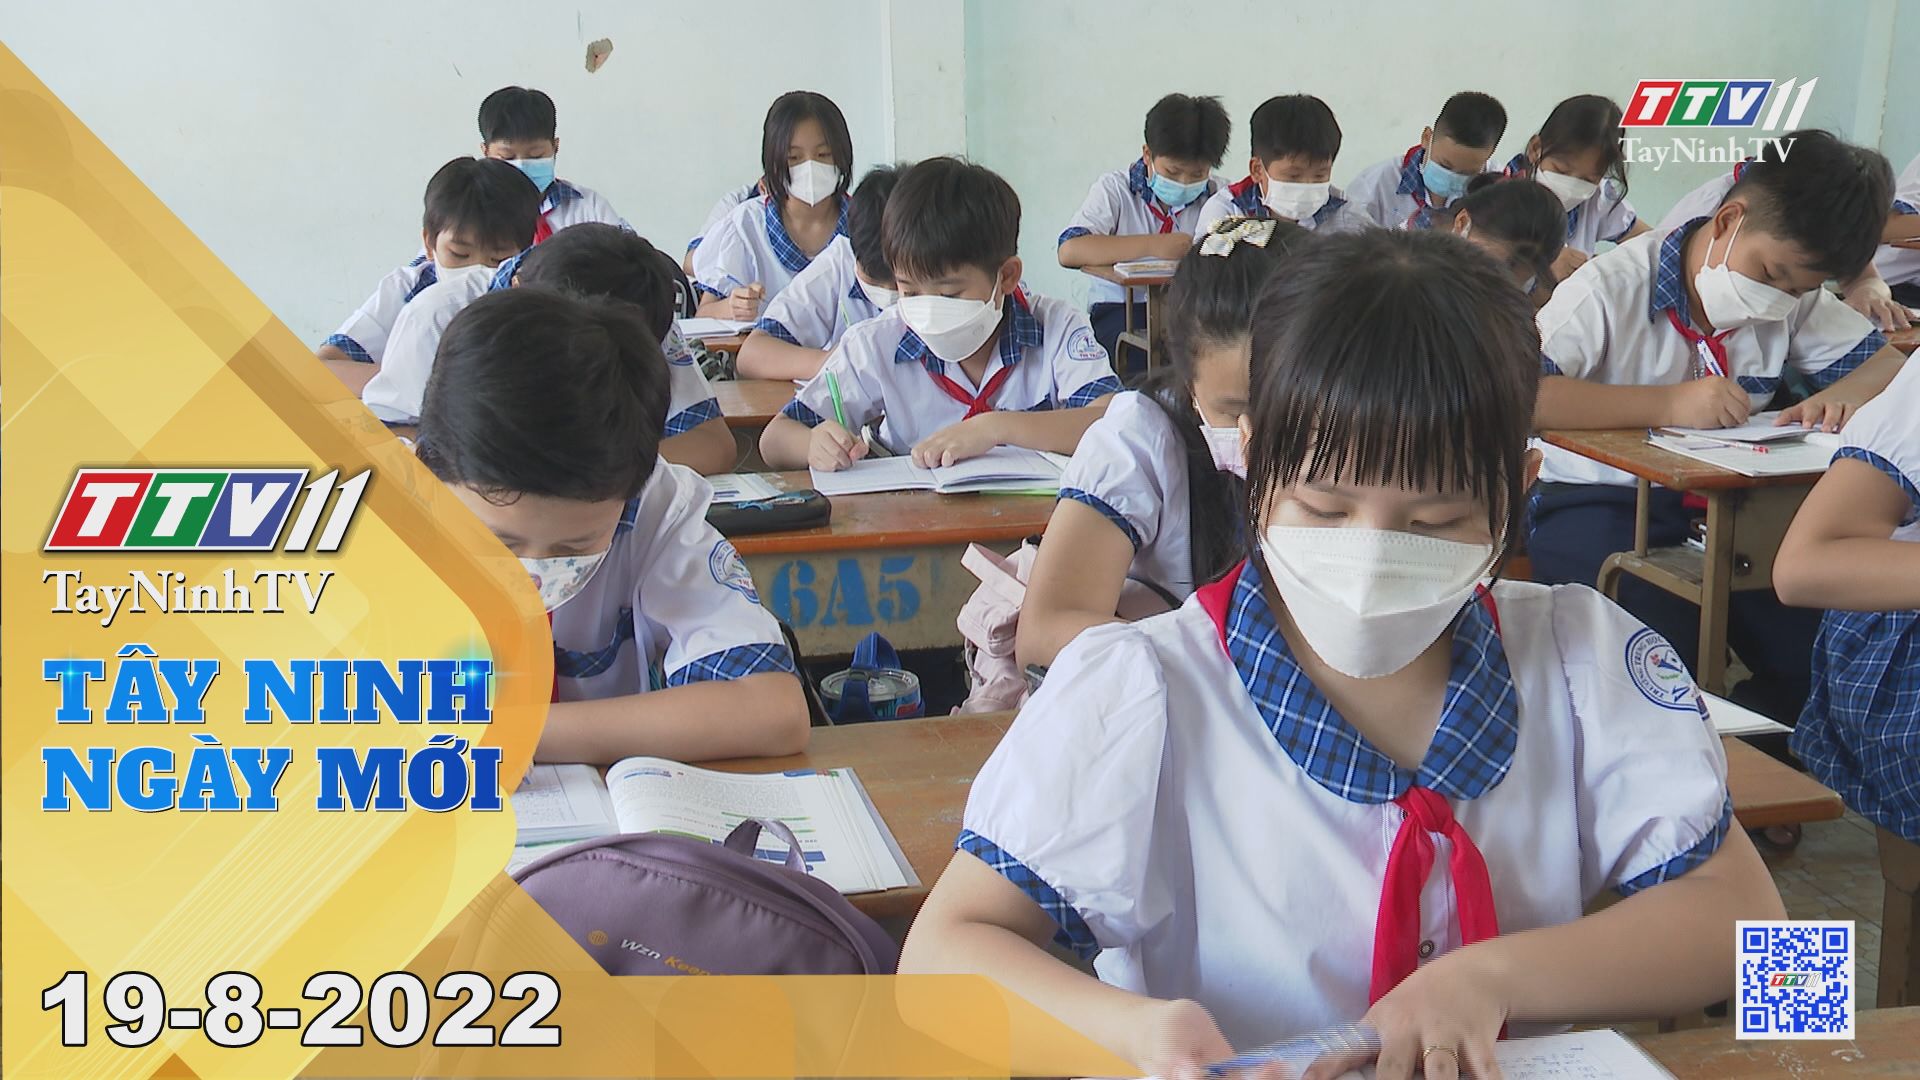 Tây Ninh ngày mới 19-8-2022 | Tin tức hôm nay | TayNinhTV